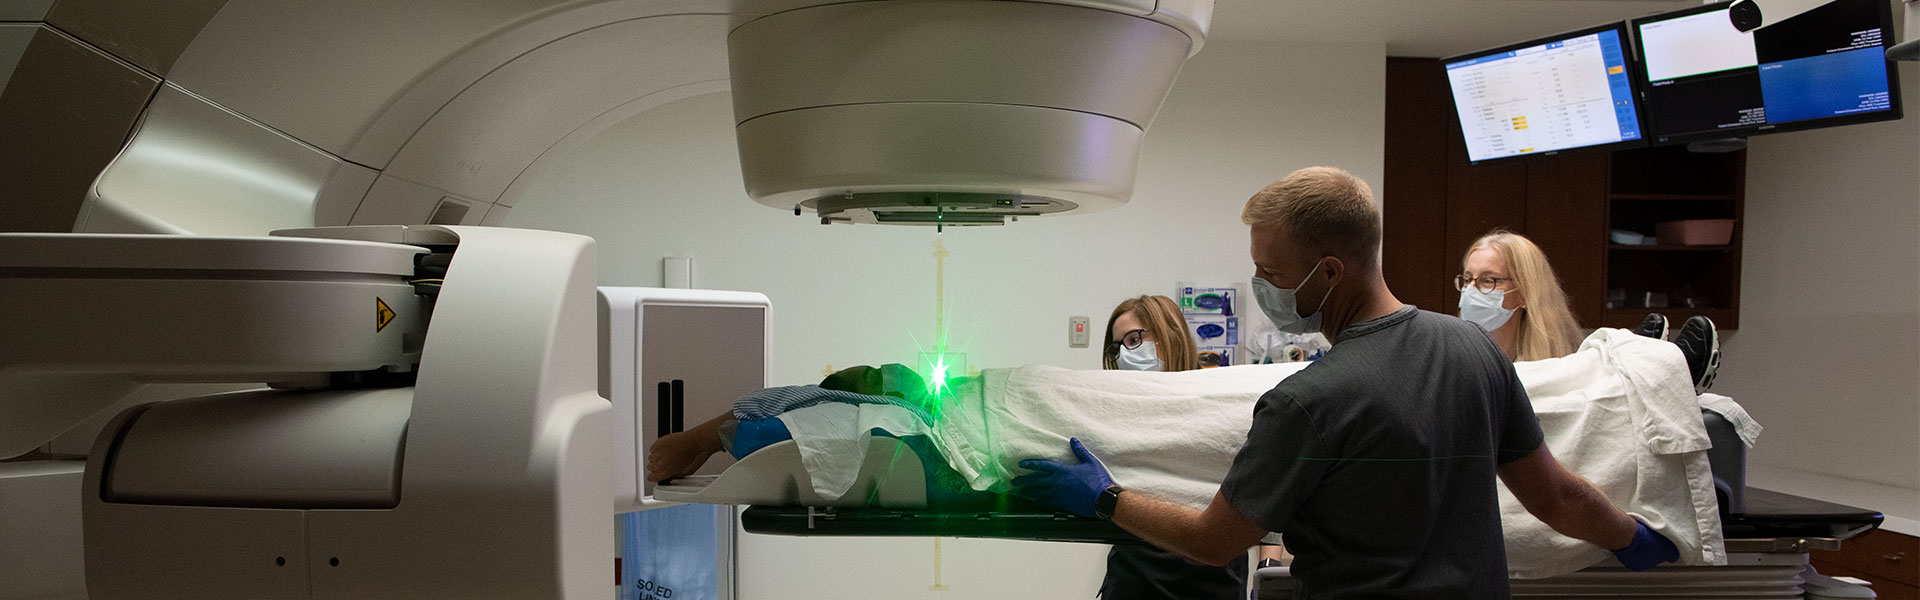 Patient doing an MRI